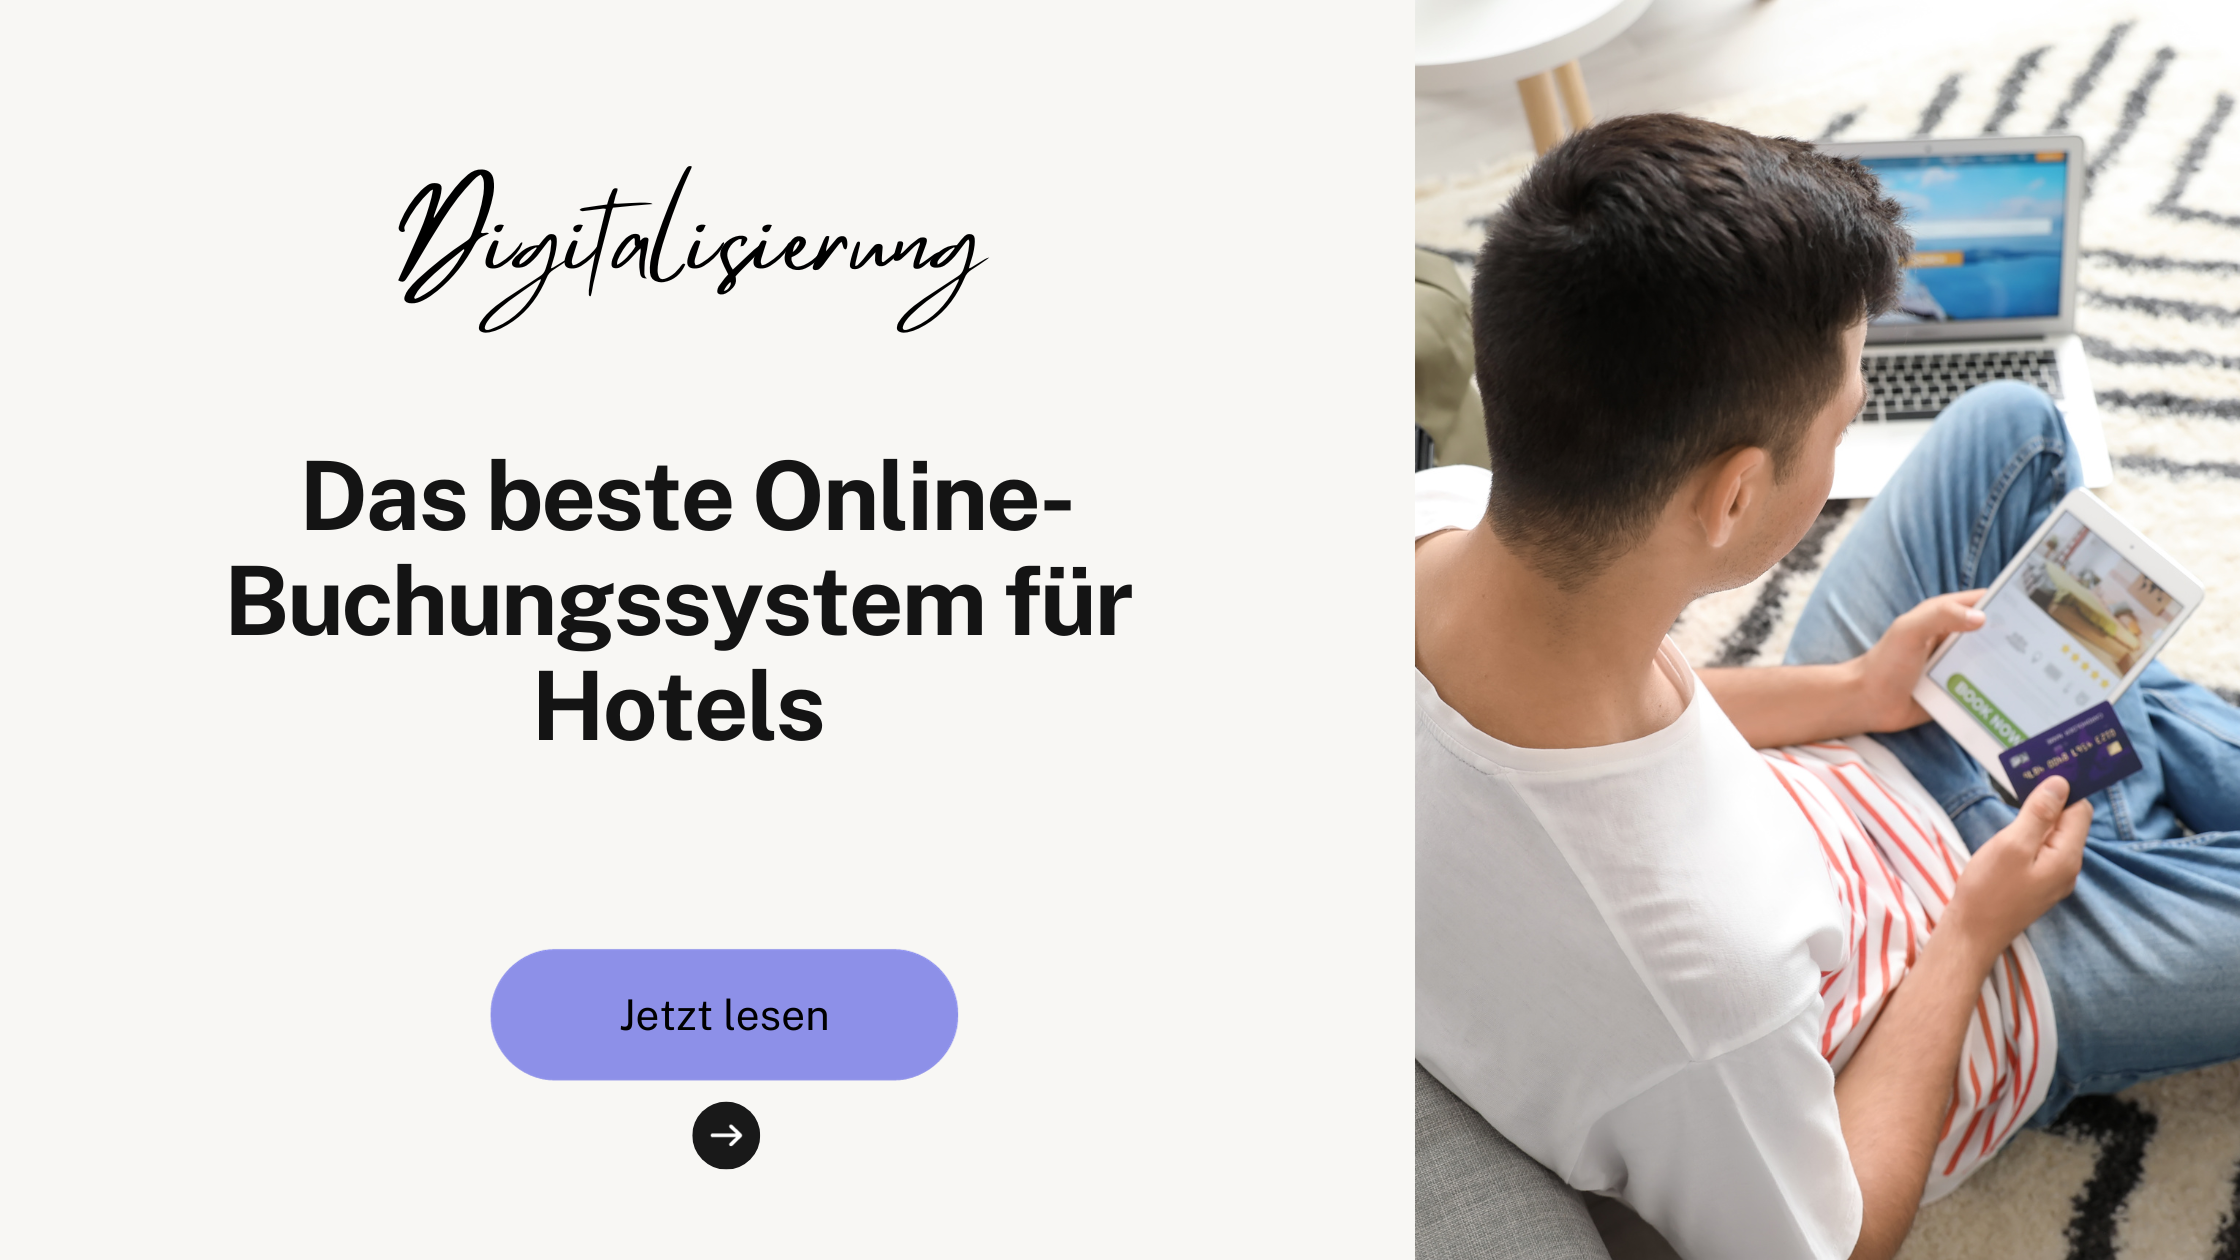 Das beste Online-Buchungssystem für Hotels